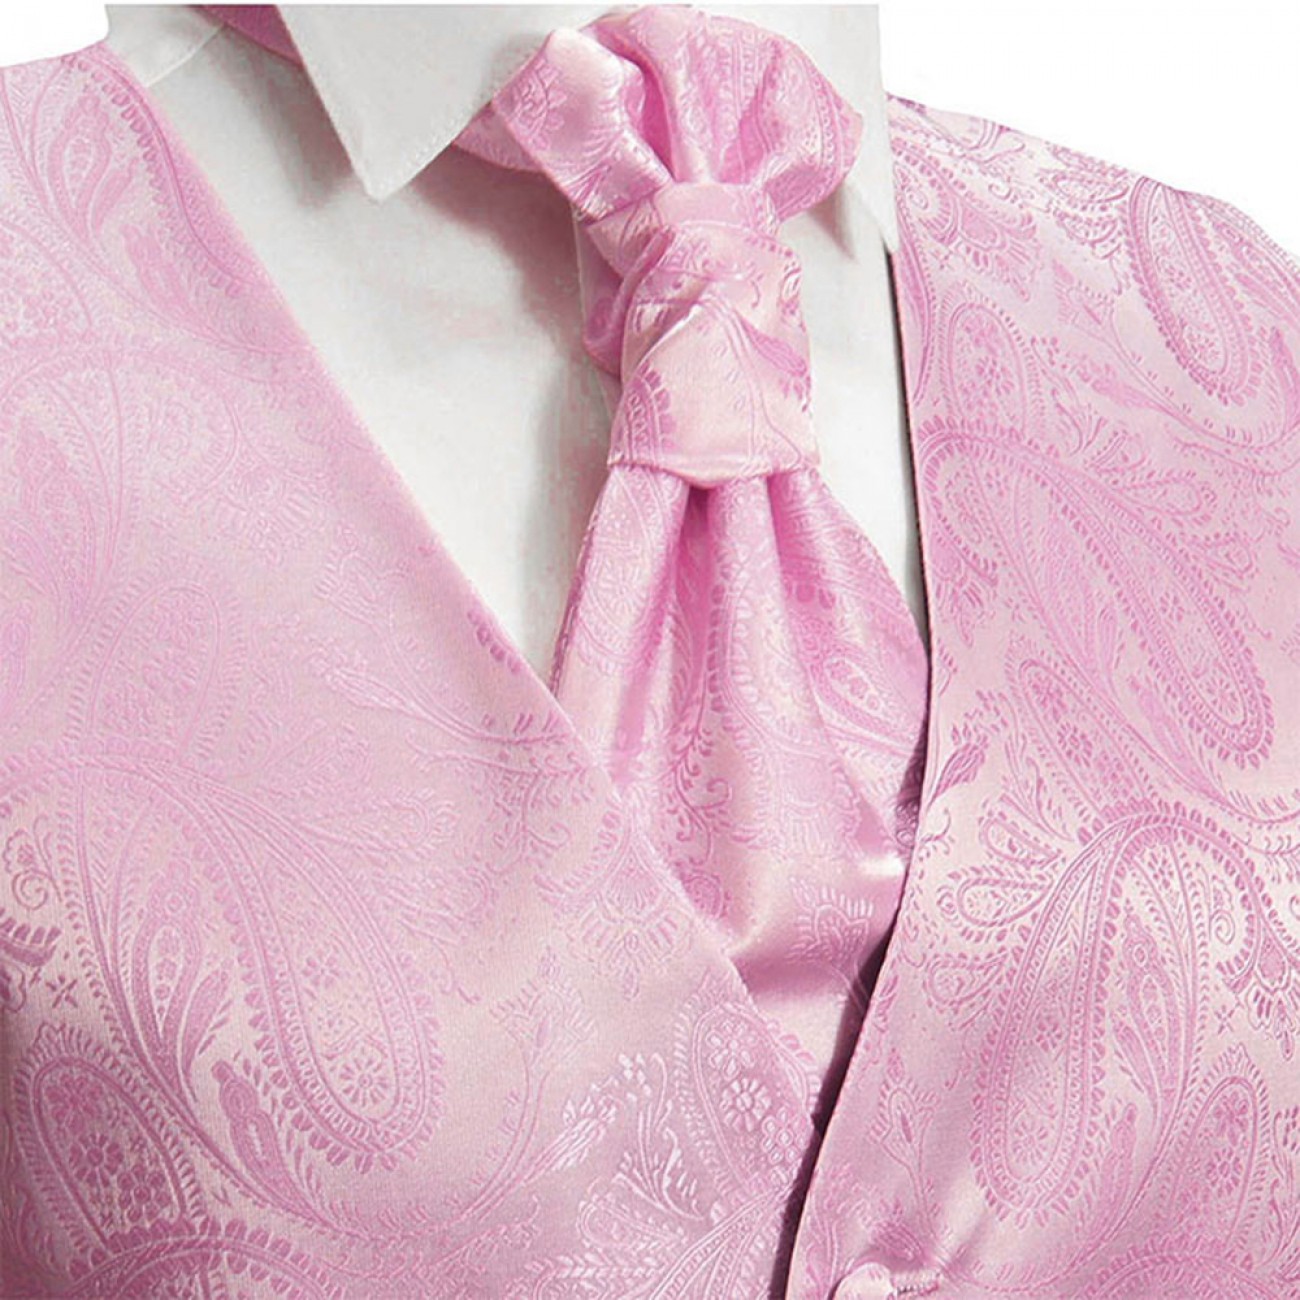 Herren Hochzeit Weste - Hochzeitswesten Set rosa pink